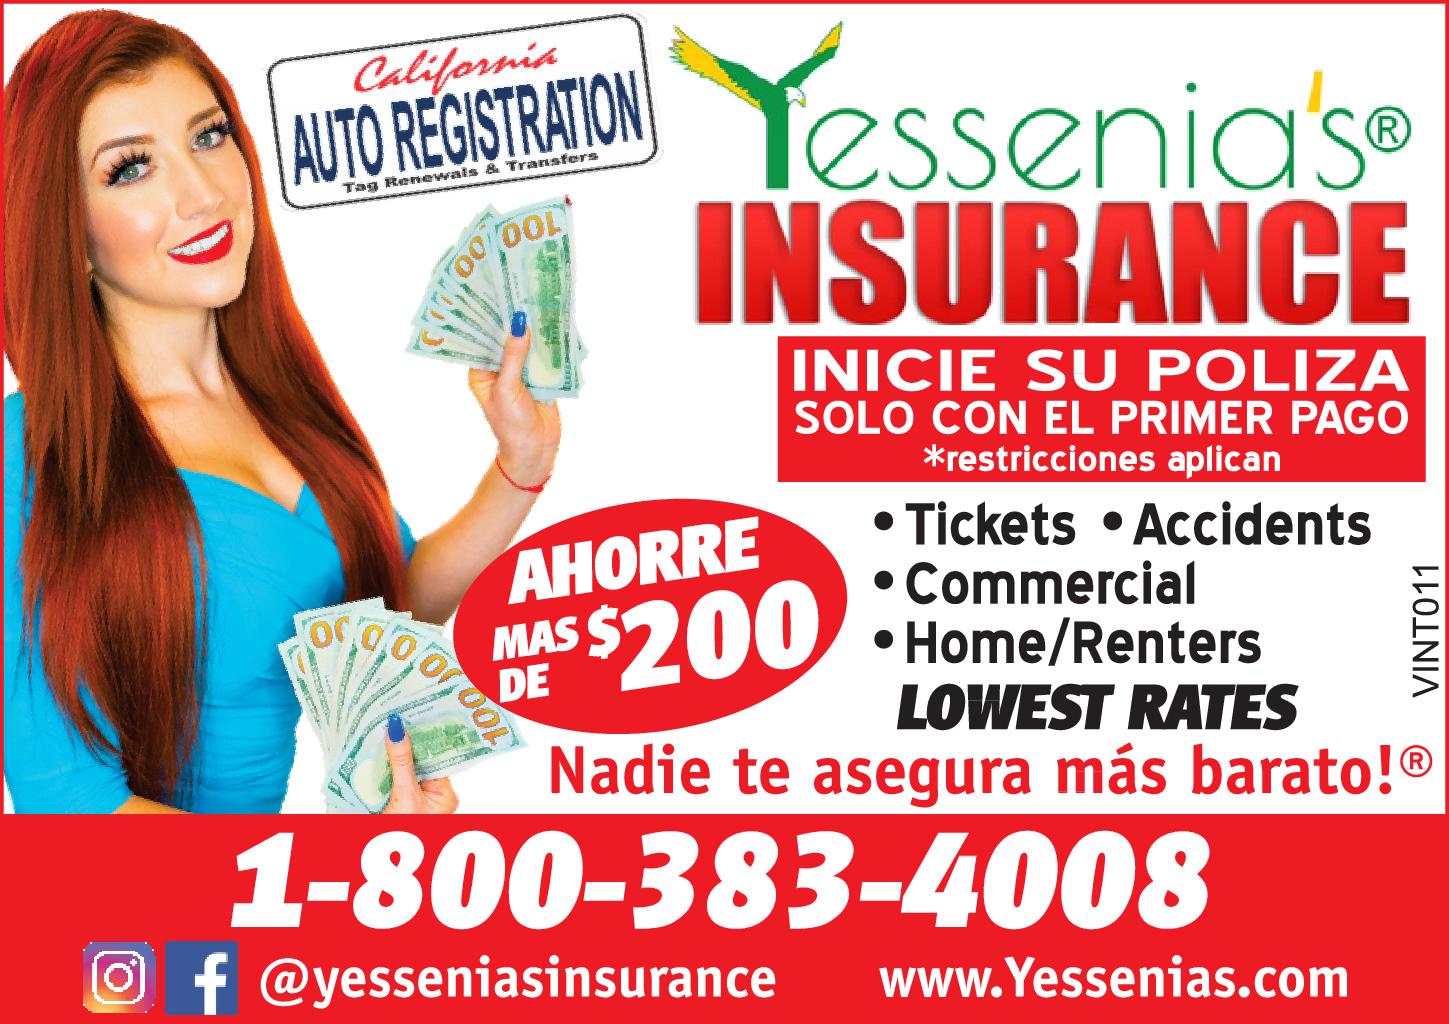 Yessenia's Insurance